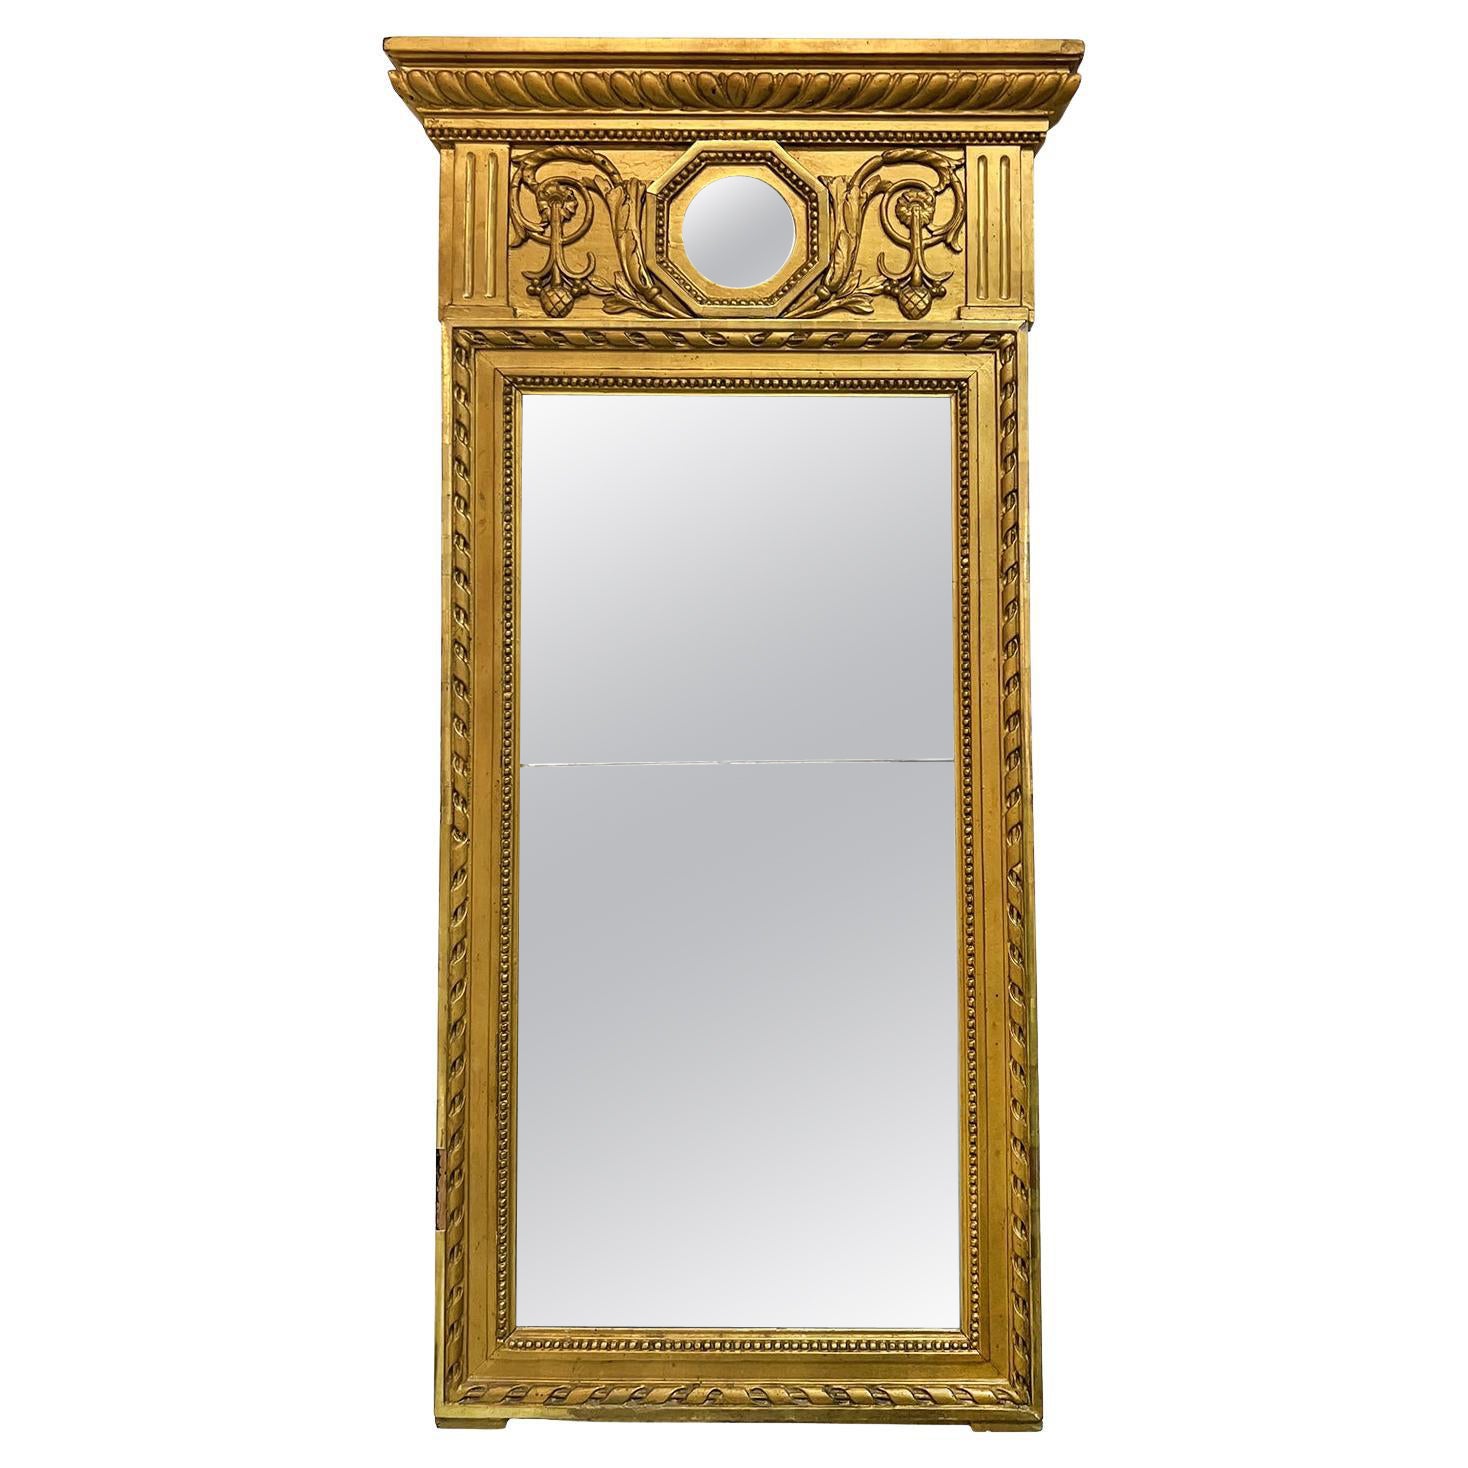 Spiegel in einer Auktion